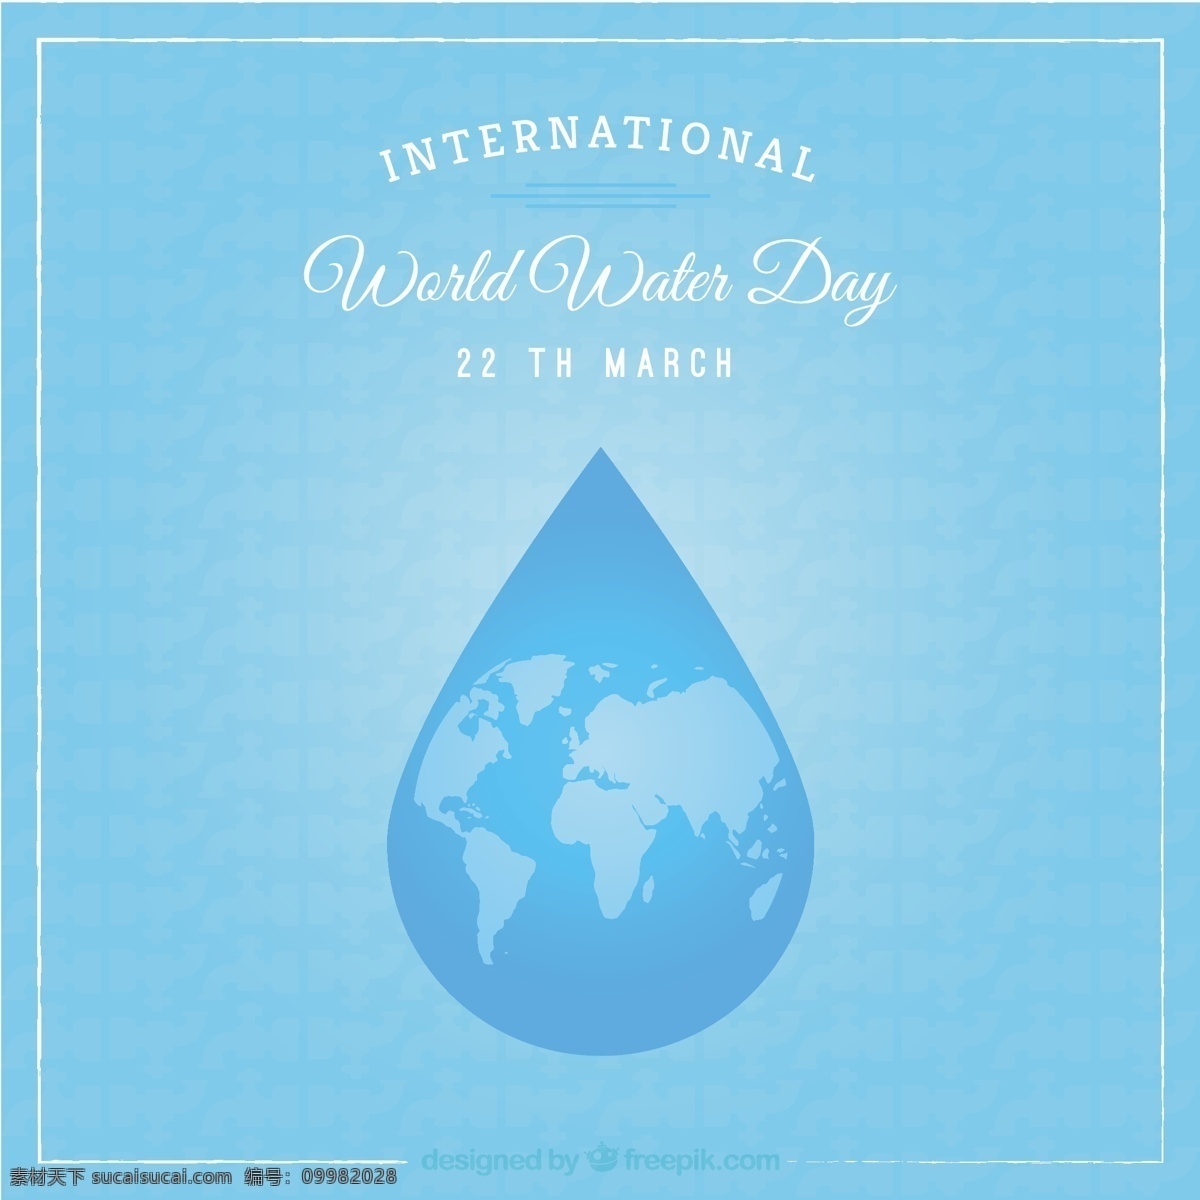 国际 世界 水日 背景 水的世界 自然 蓝色的背景 蓝色的水下降 下降 生态 环境 插图 自然背景 天 效益意识 保护世界 青色 天蓝色